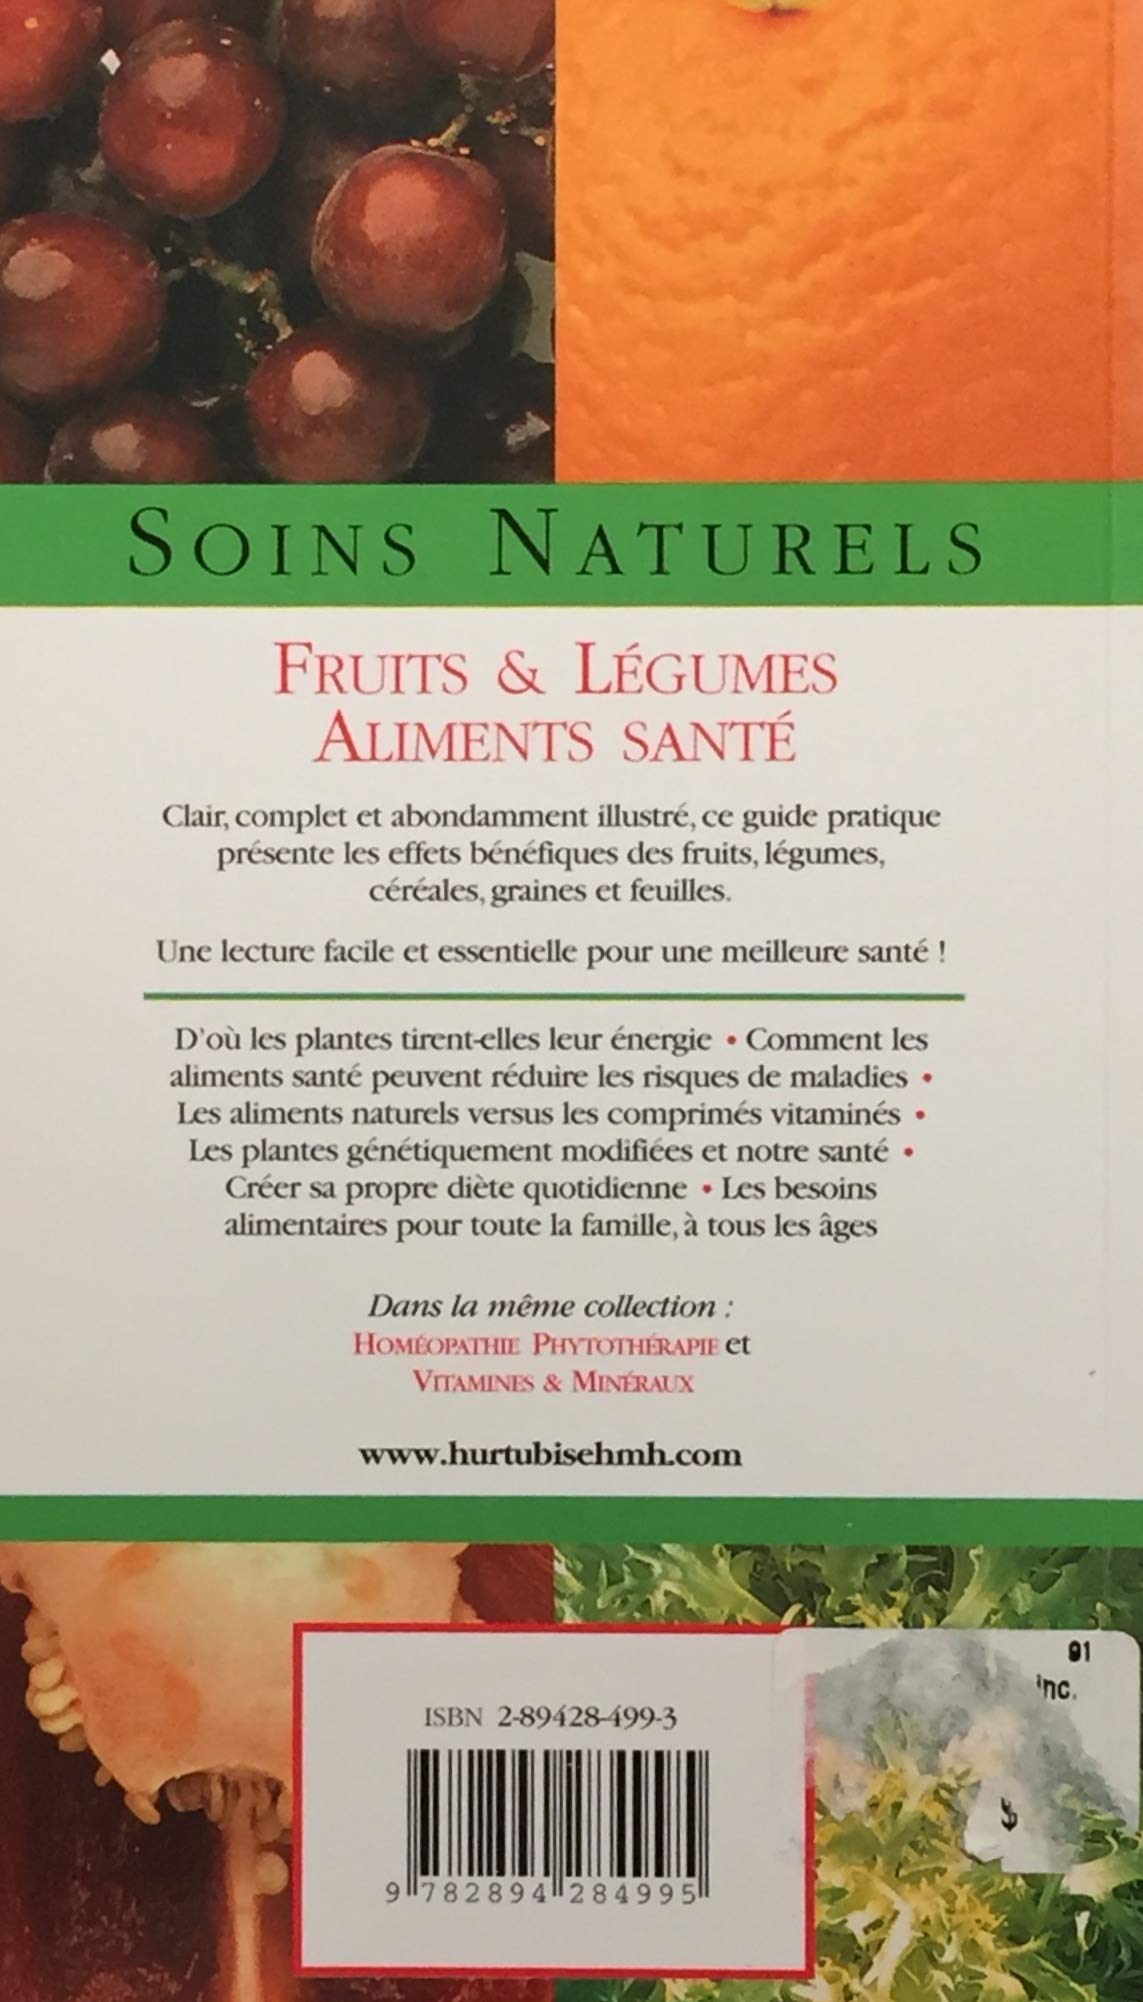 Soins naturels : Guide pratique des fruits et légumes - Aliments santé (Lyndel Costain)